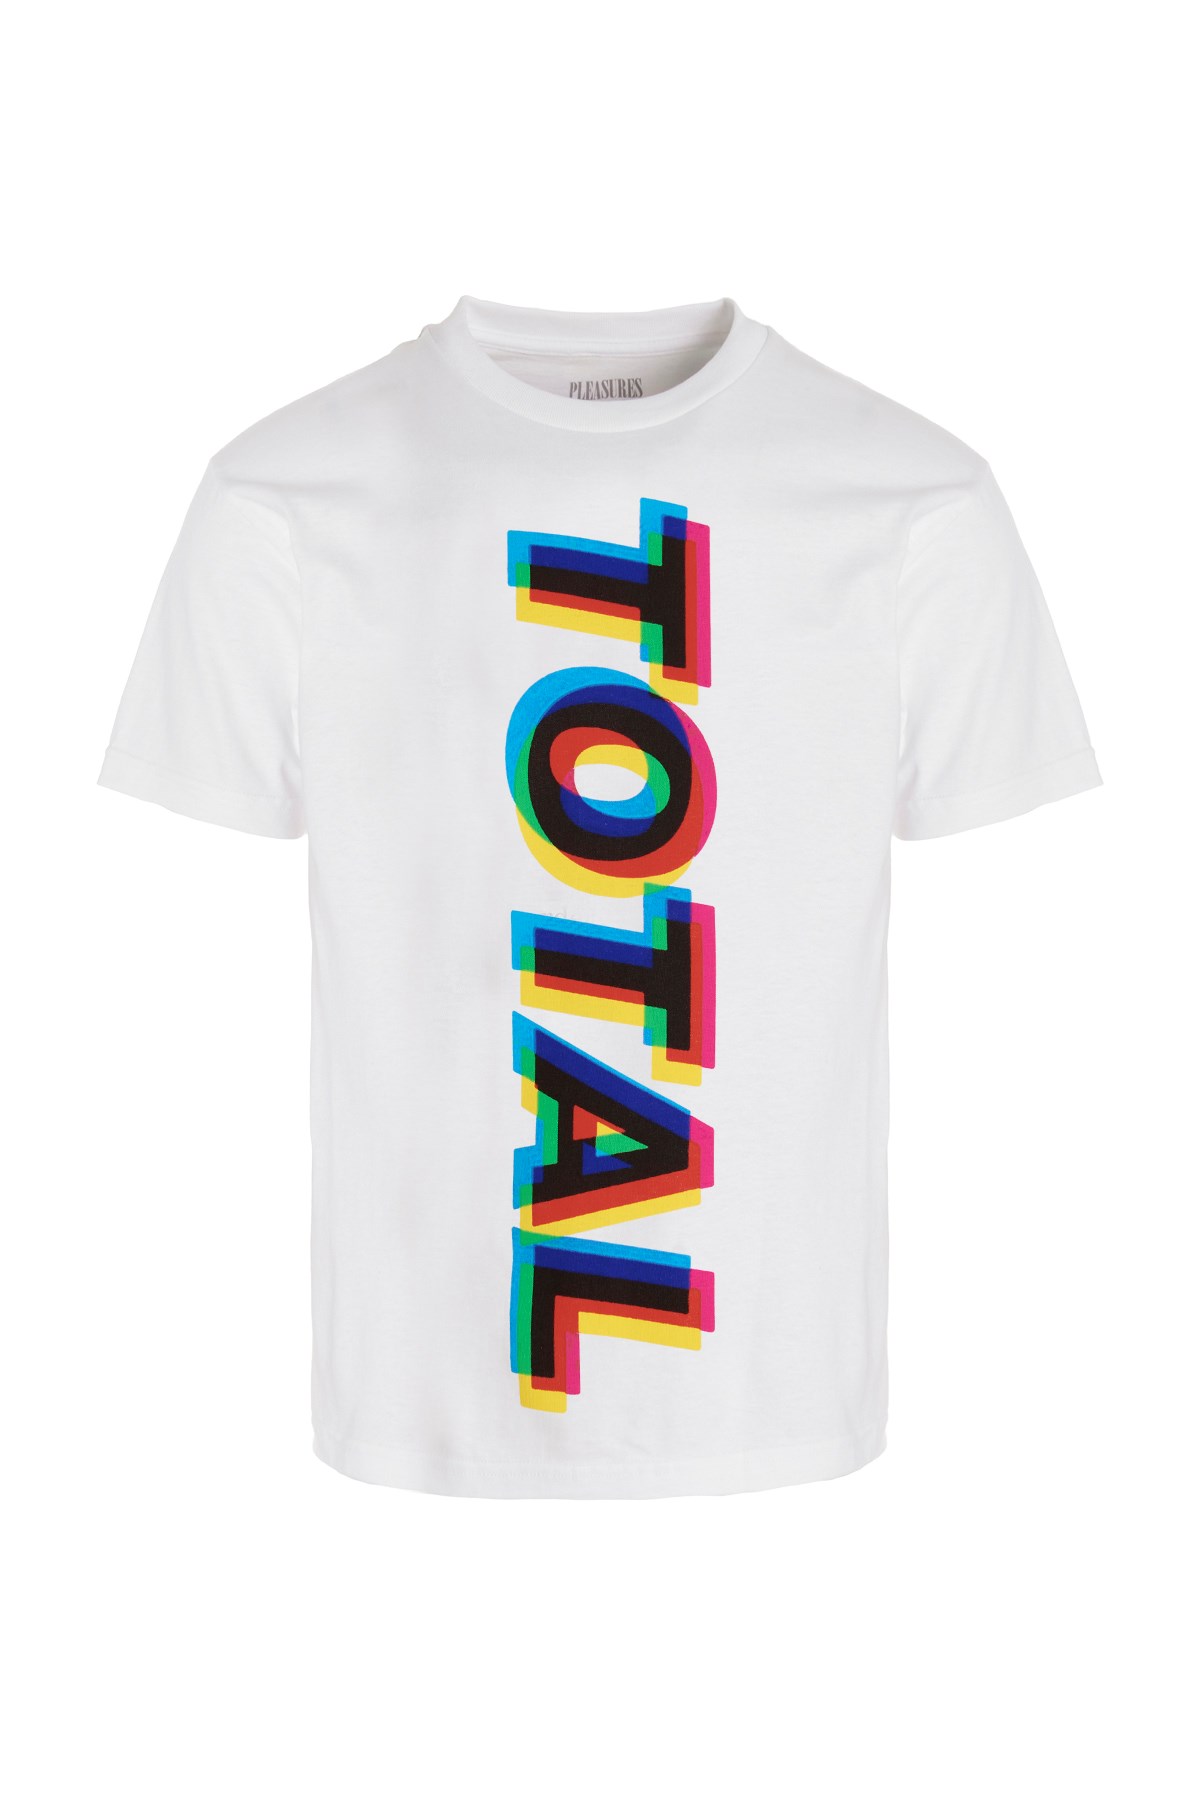 PLEASURES New Order Capsule ‘Total' T-Shirt